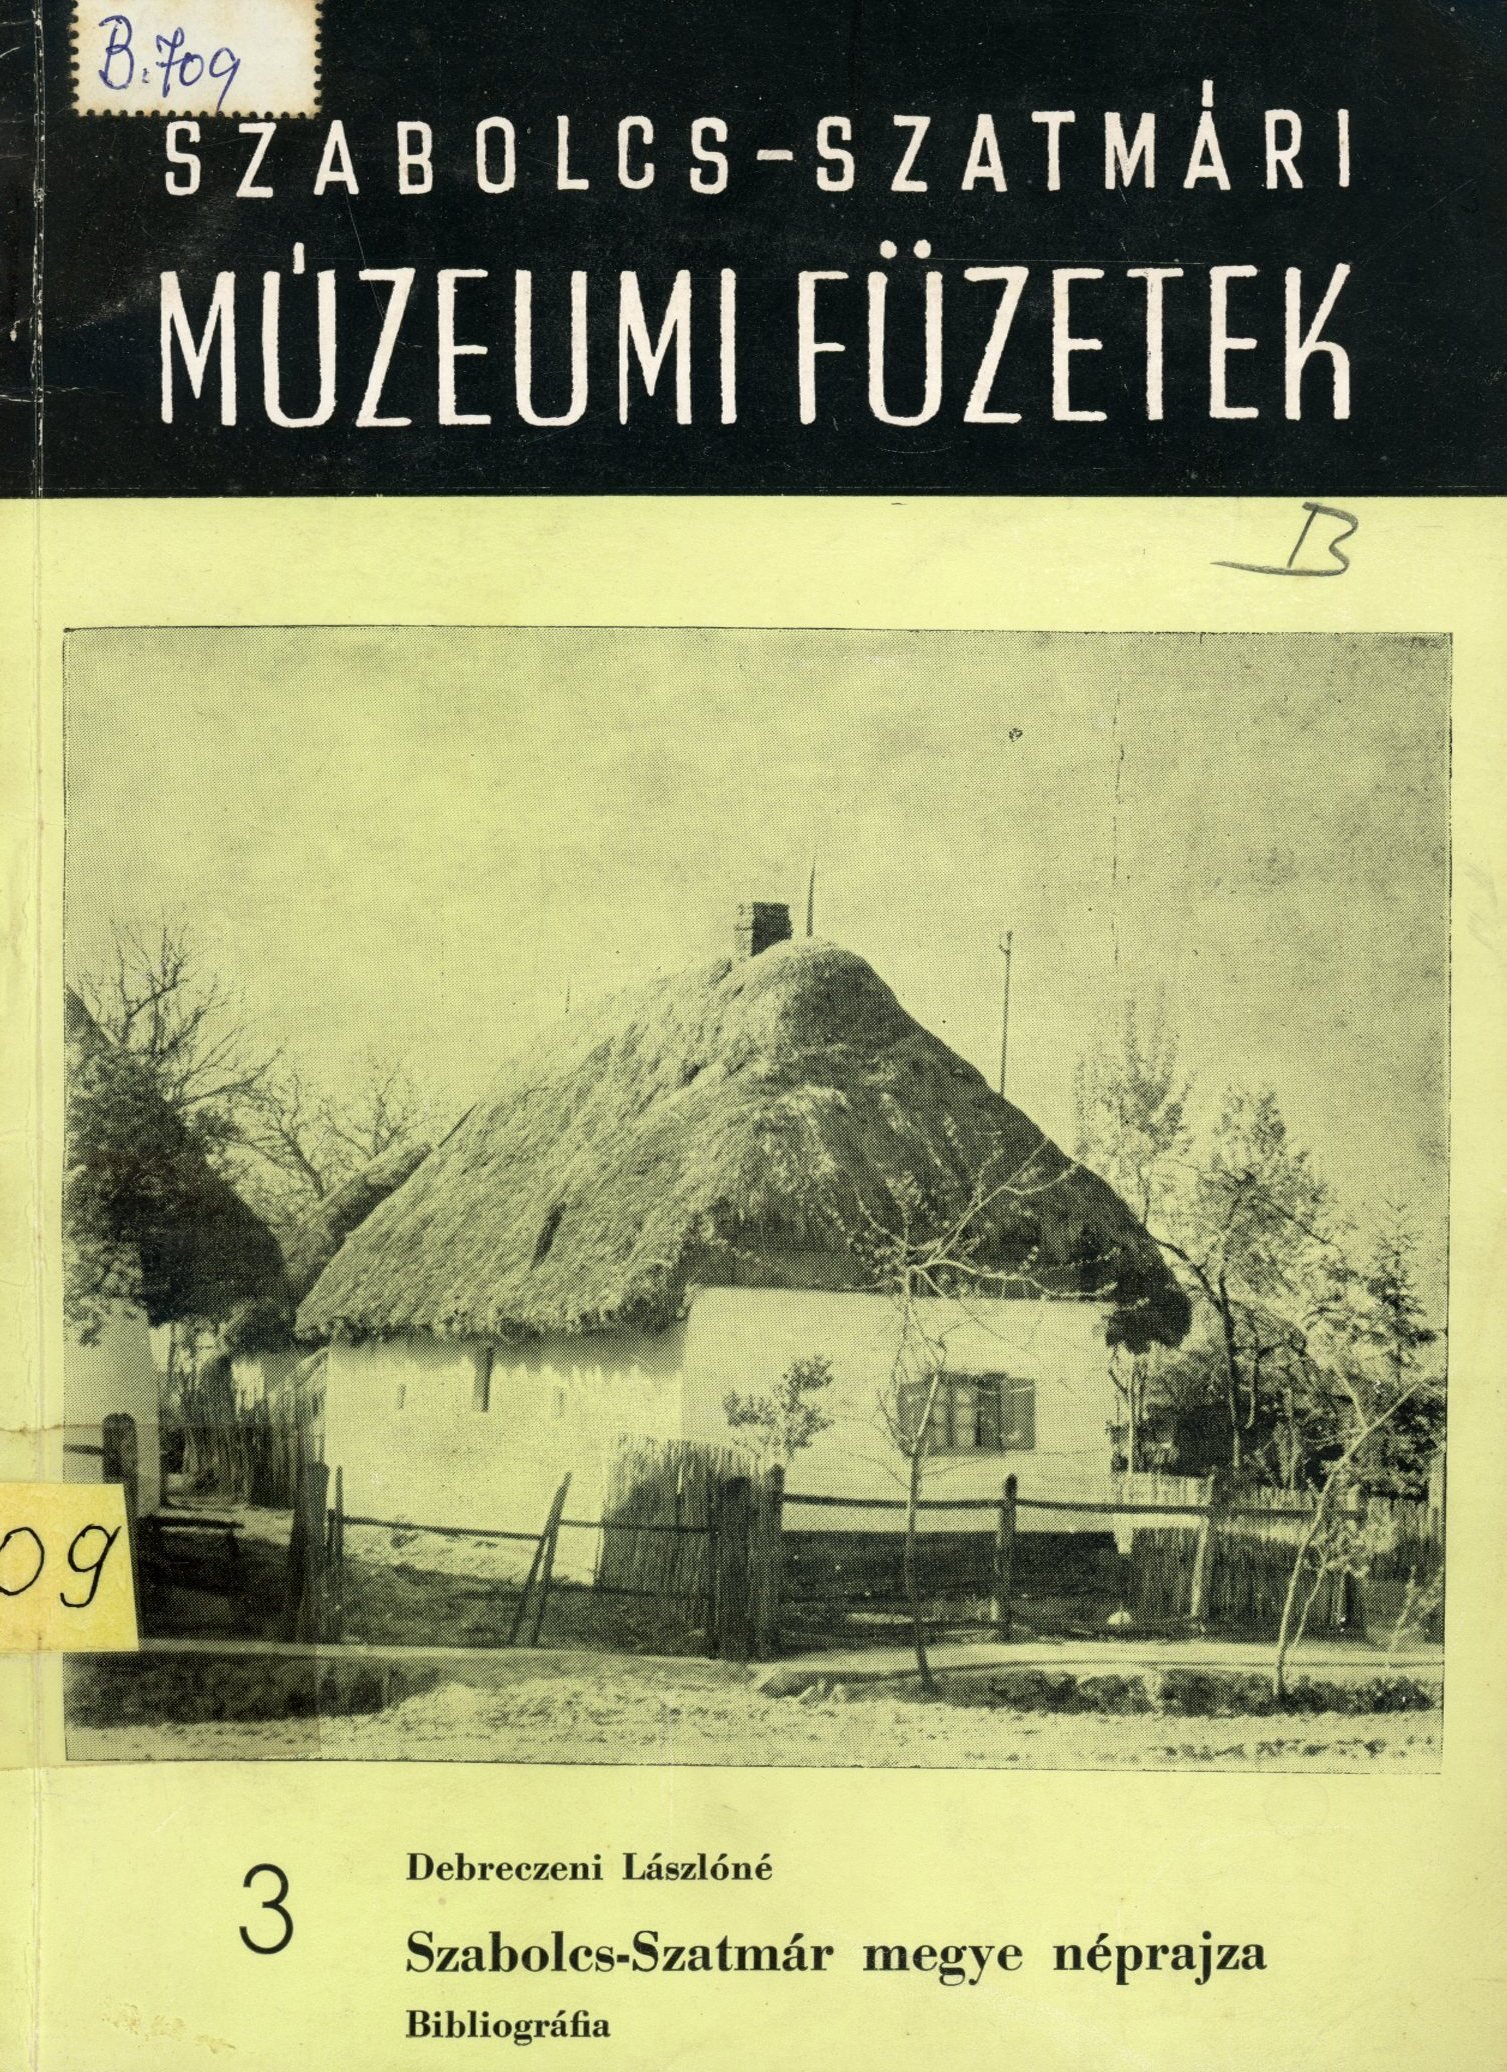 Debreczeni Lászlóné (Erkel Ferenc Múzeum és Könyvtár, Gyula CC BY-NC-SA)